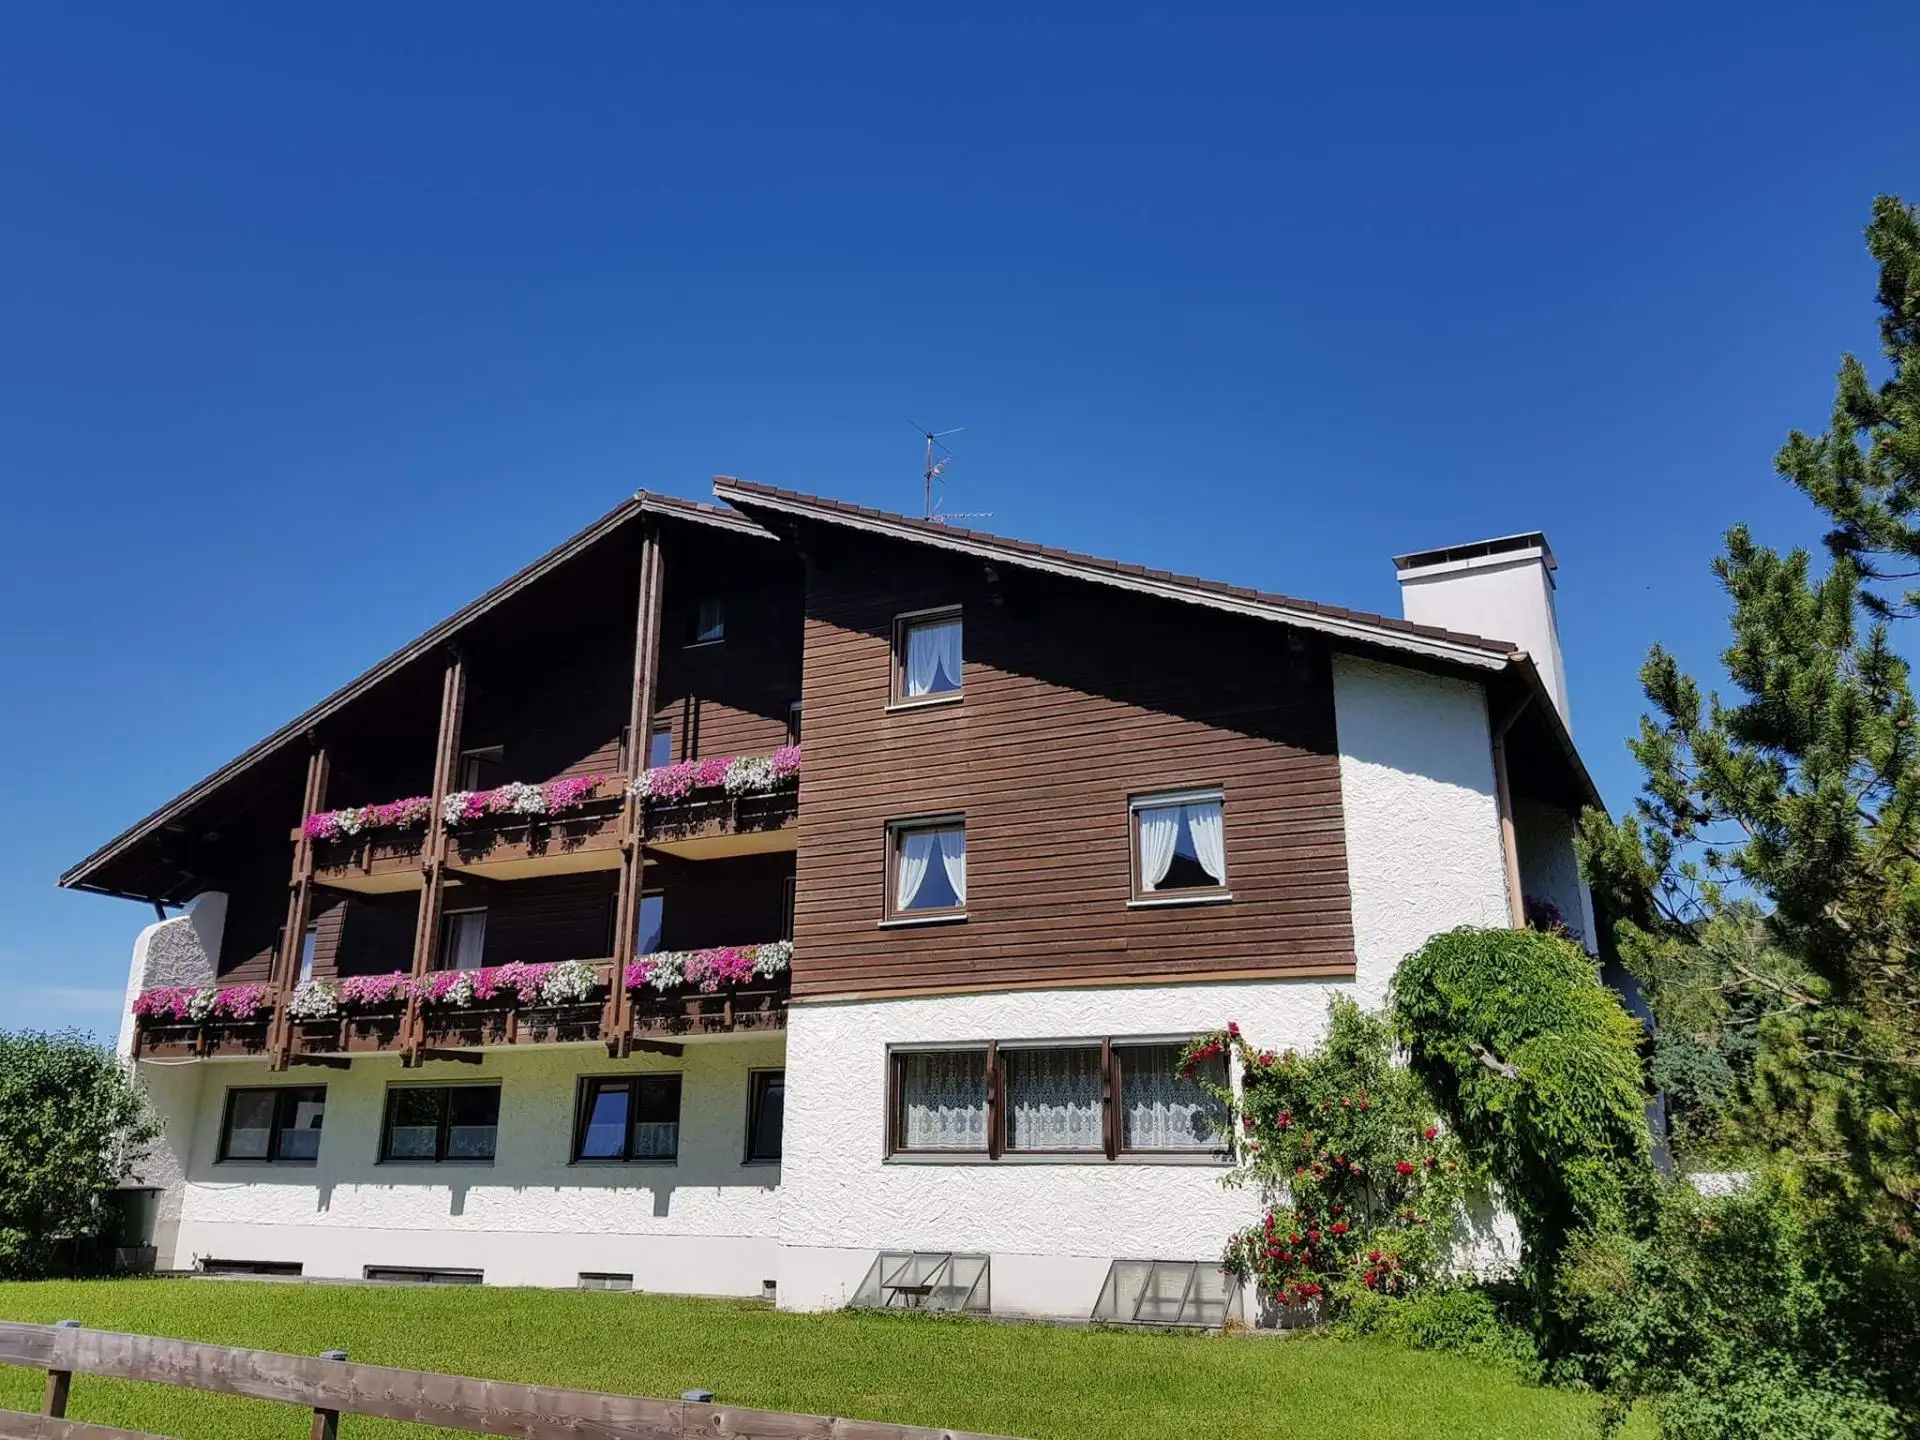 Alpenlandhaus #Willkommen#Wohneinheiten#Preise#Anfragen#Buchen#Bildergalerie